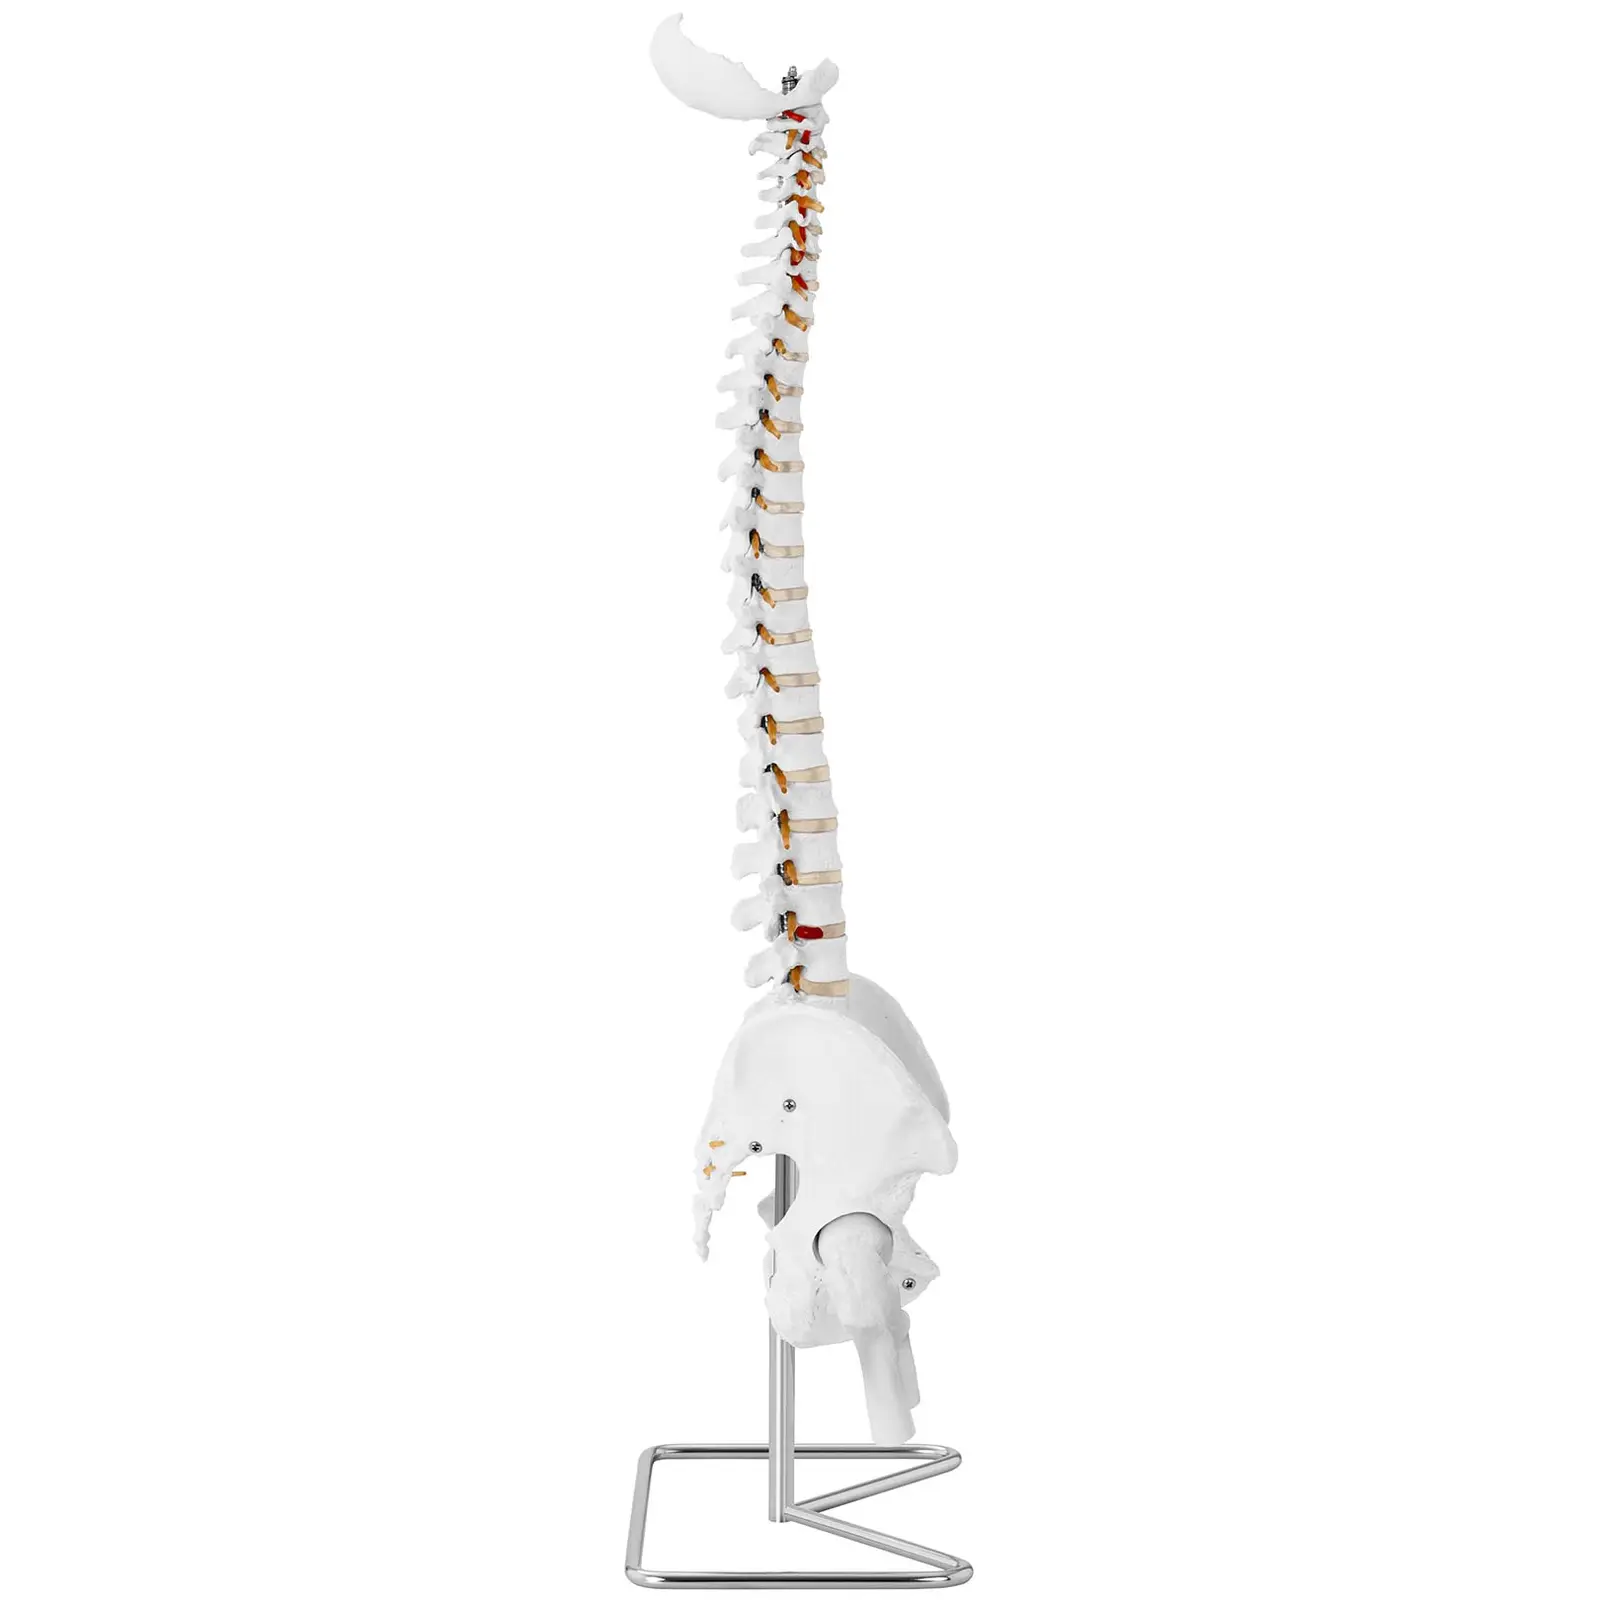 Kręgosłup z miednicą męską - 86 cm - model anatomiczny